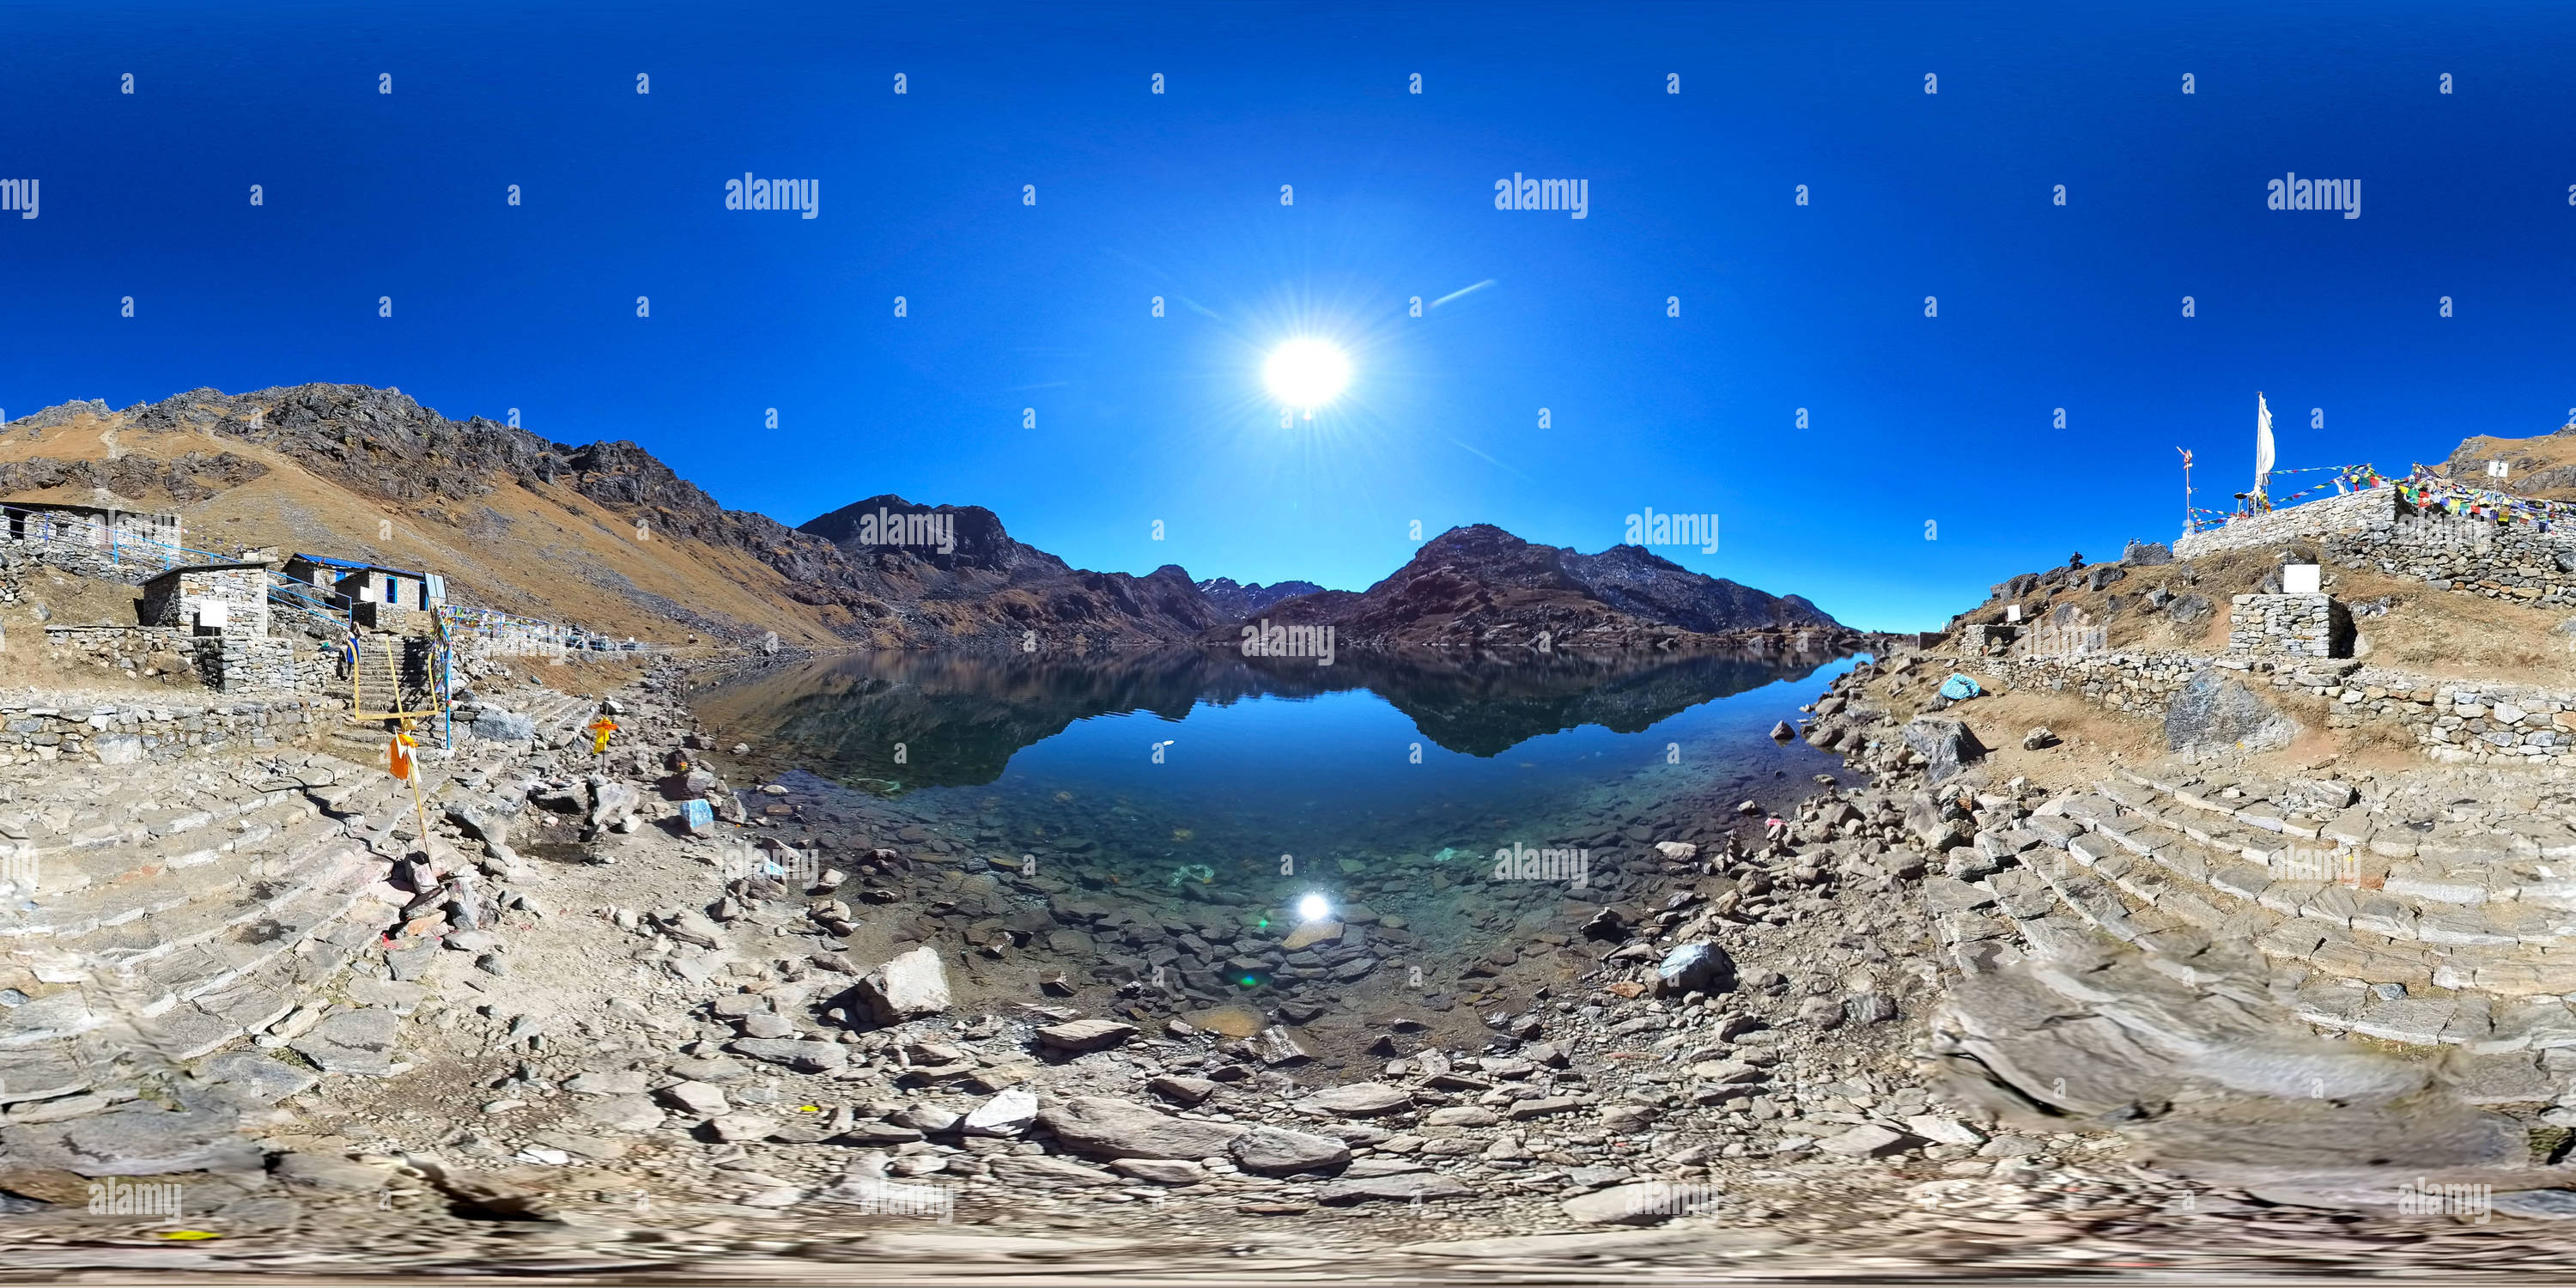 360 Grad Panorama Ansicht von Gosaikunda See (4380 m) in Rasuwa, Nepal